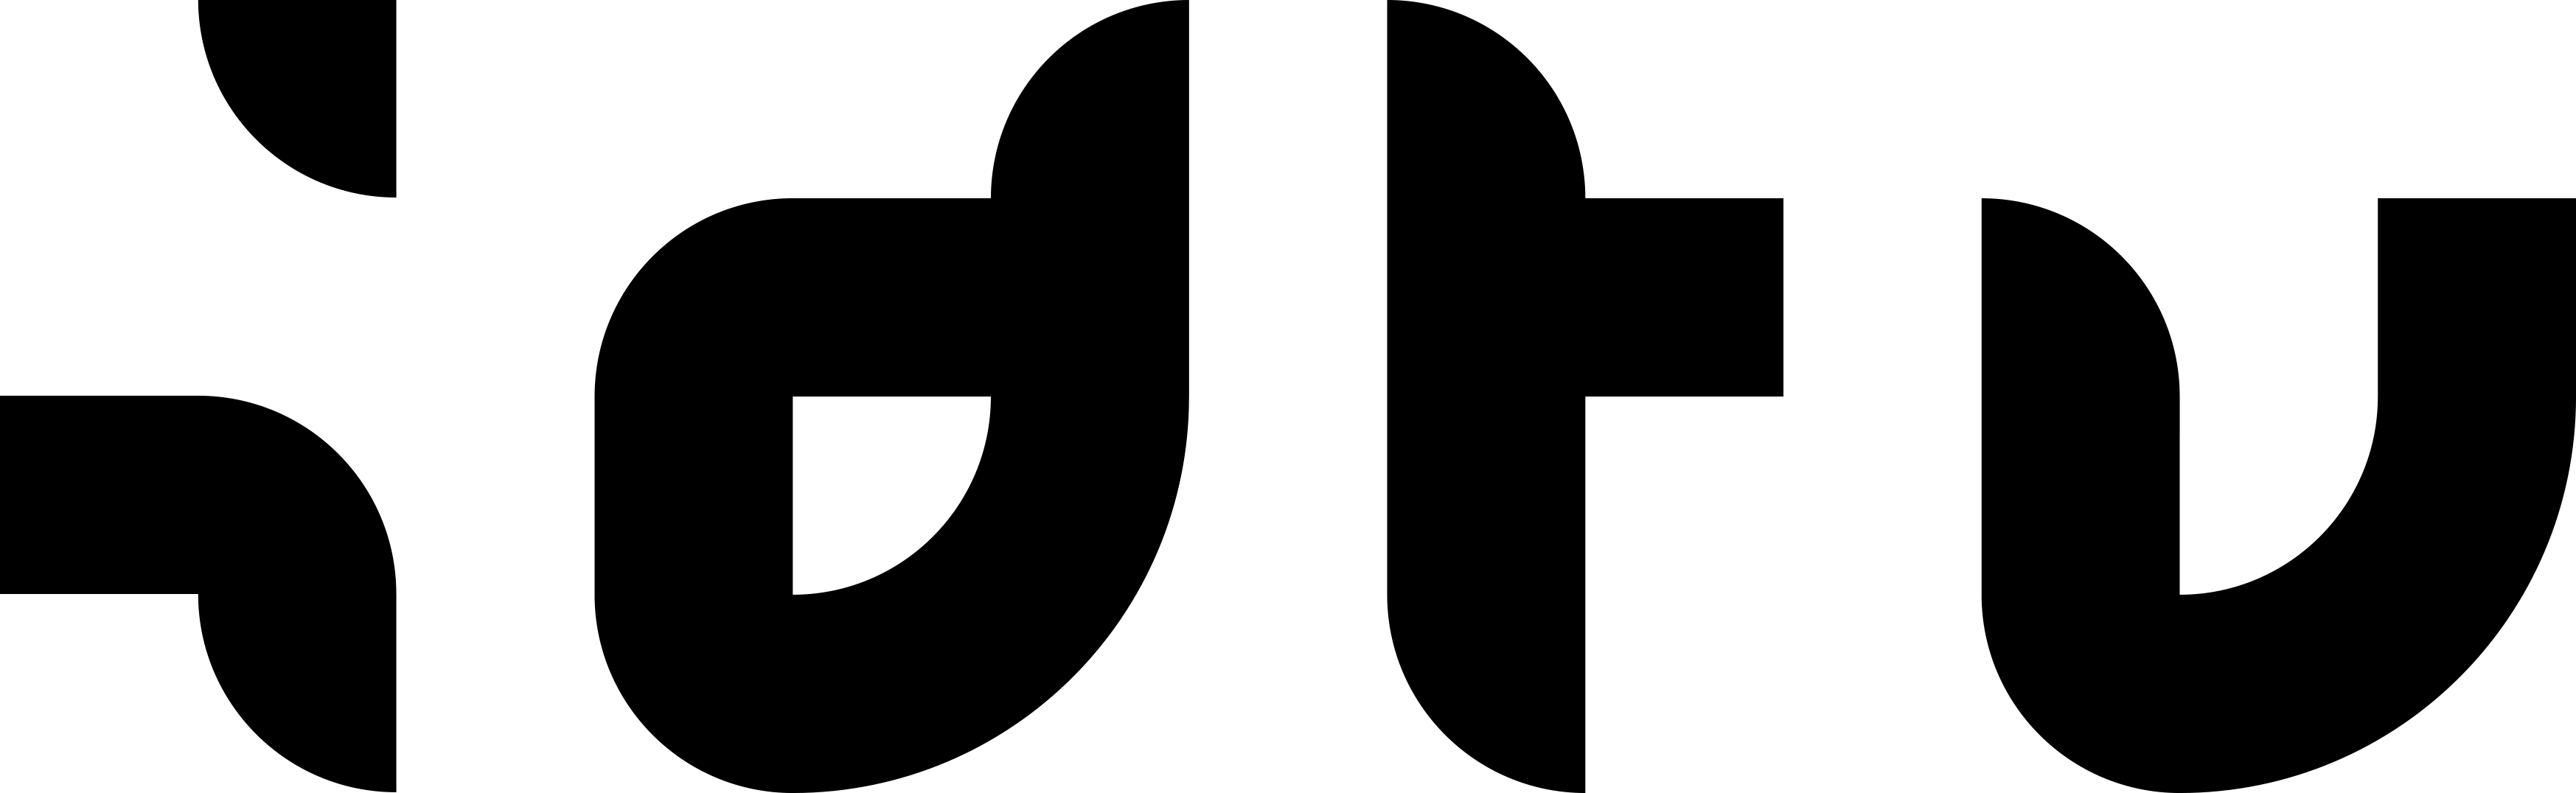 00487-IDTV_logo_zwart.png